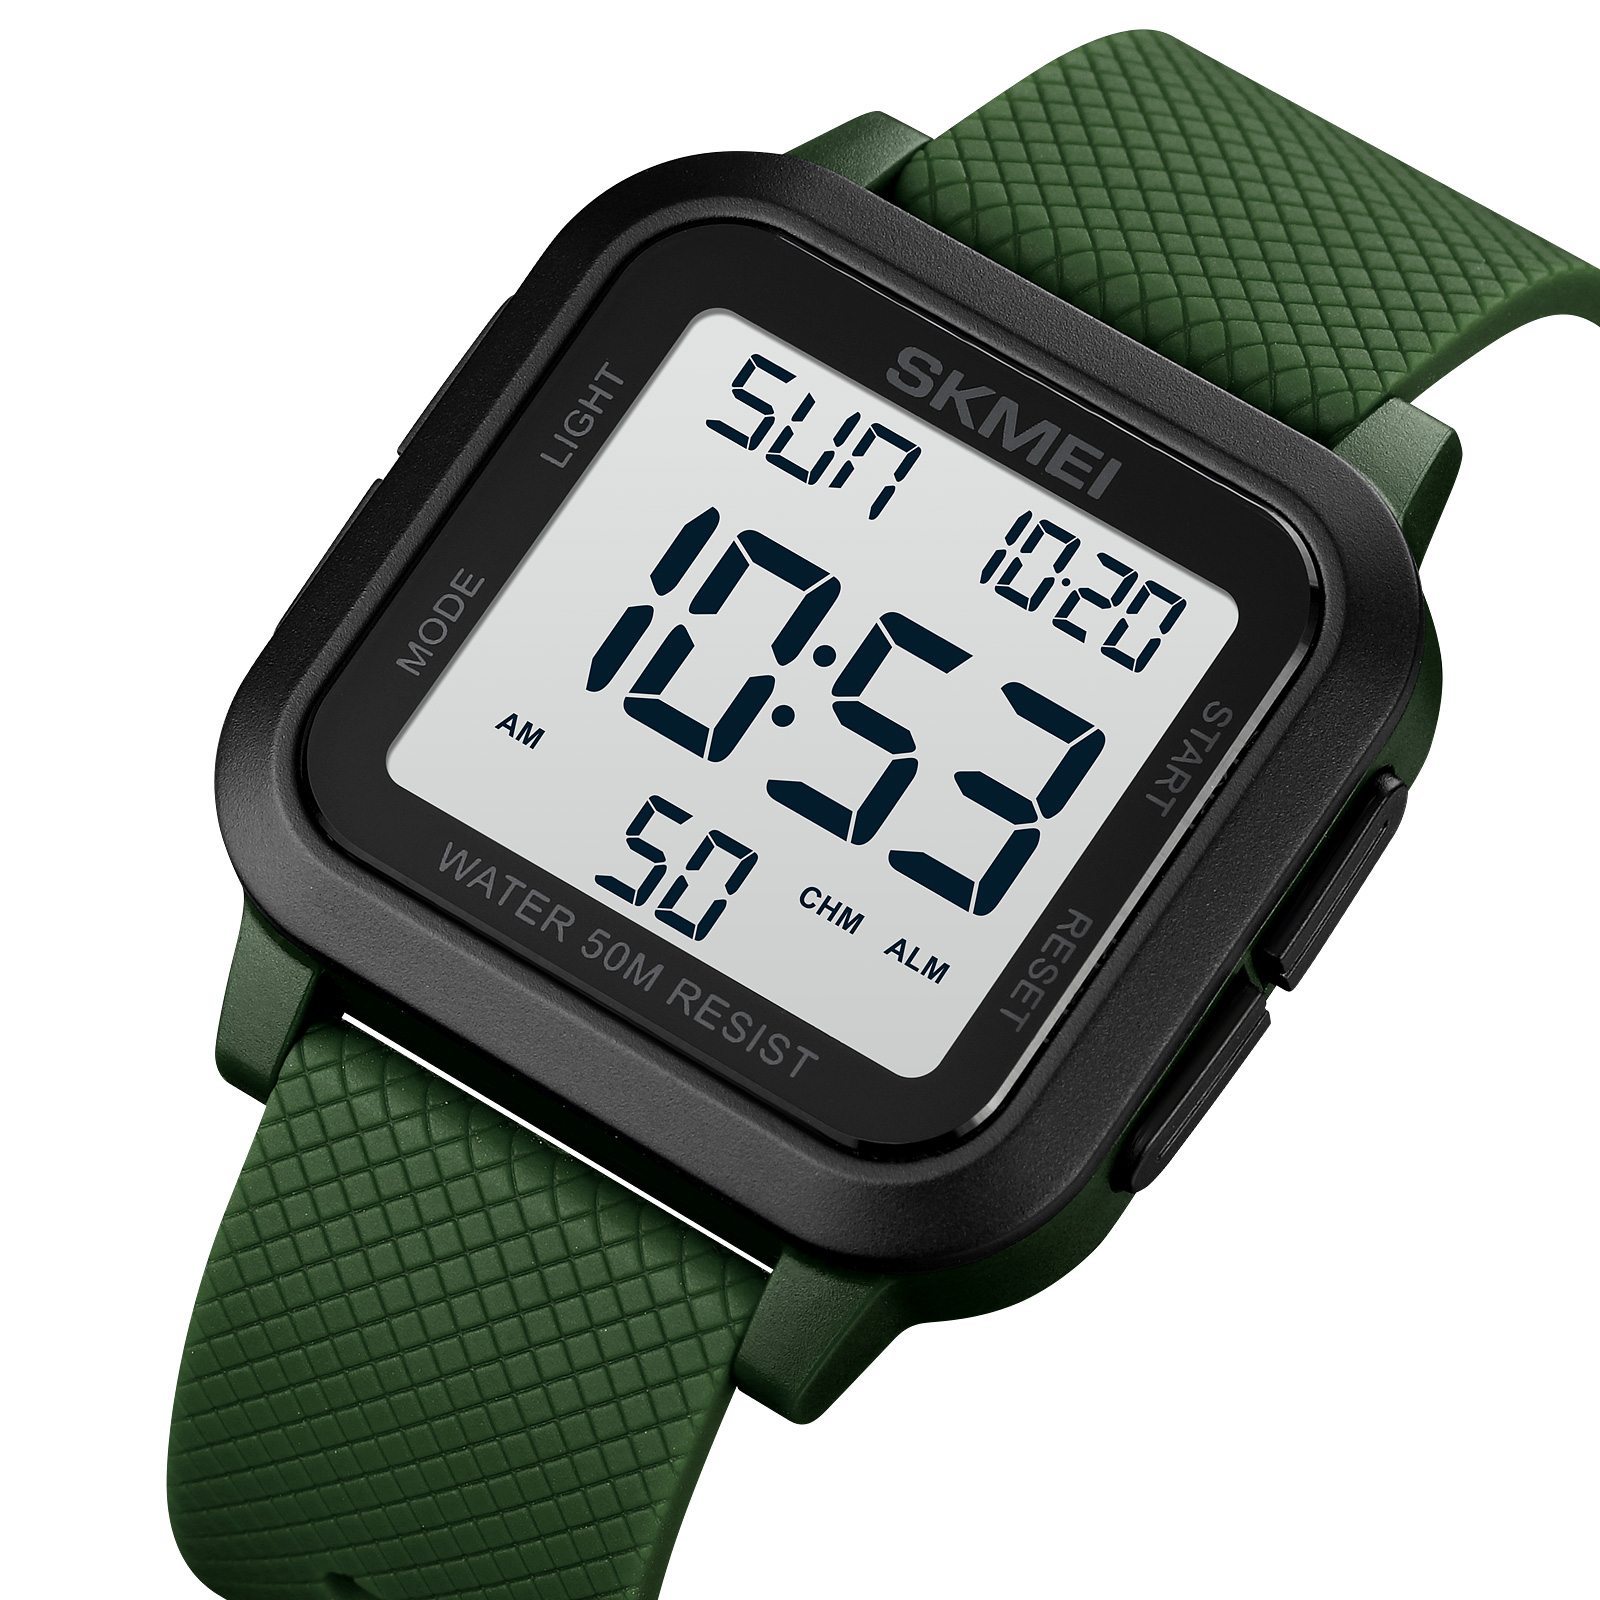 Reloj digital para hombre, impermeable, podómetro, reloj deportivo,  contador de pasos, calorías, reloj militar con cronómetro, alarma